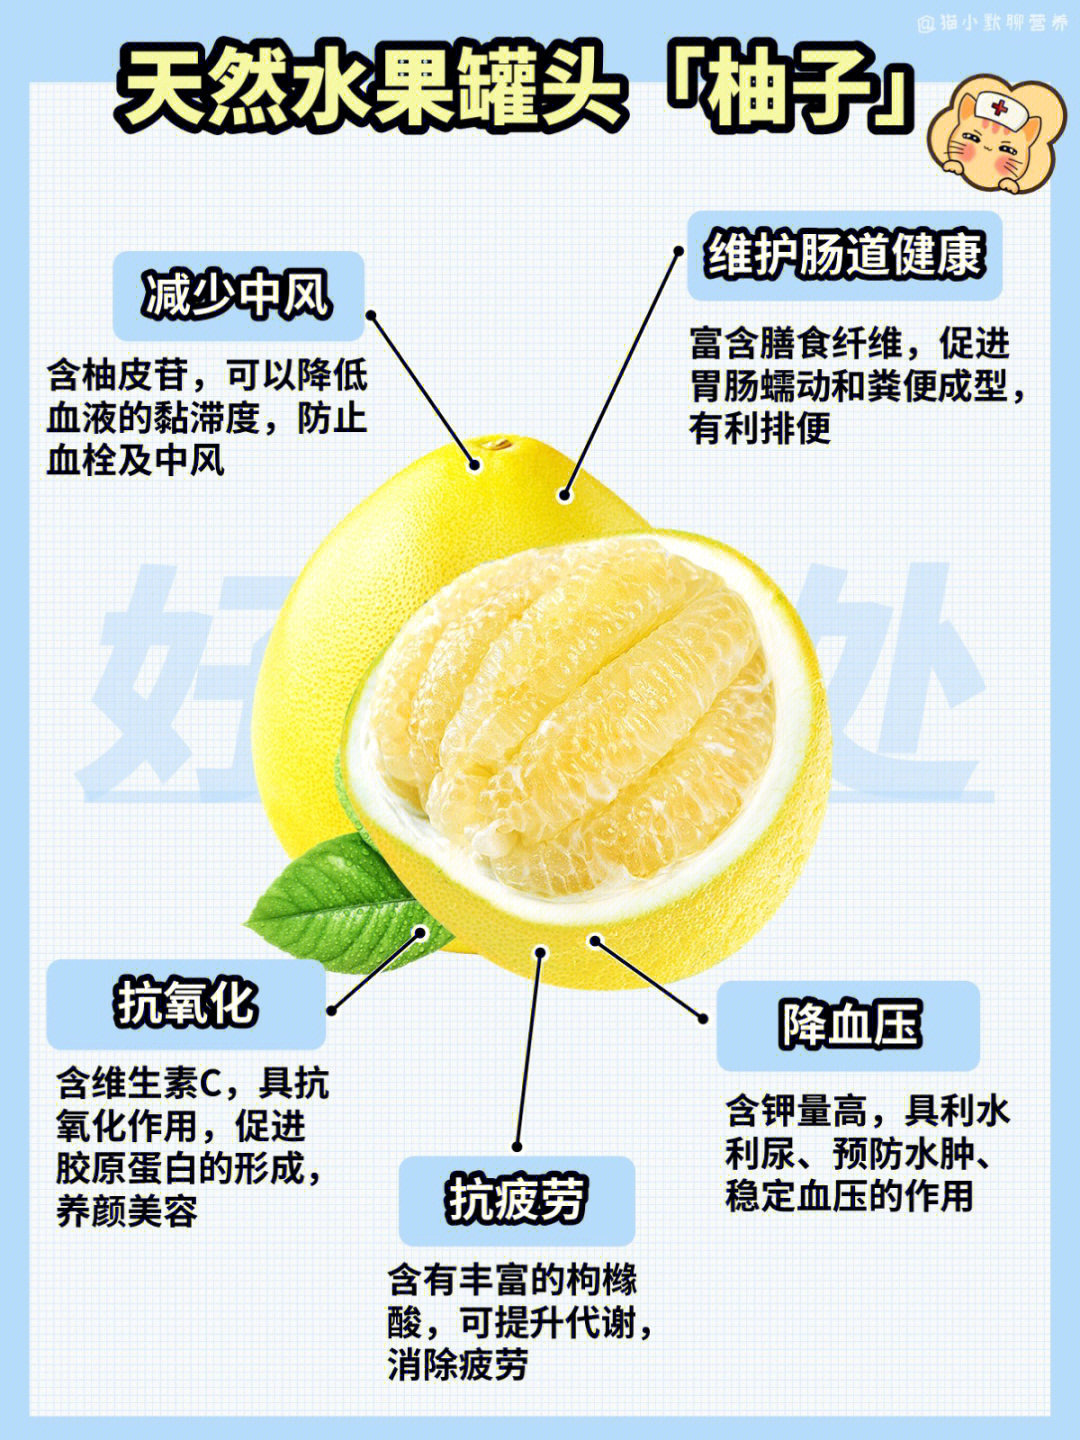 柚子营养价值很高,含有非常丰富的蛋白质,有机酸,维生素以及钙,磷,镁